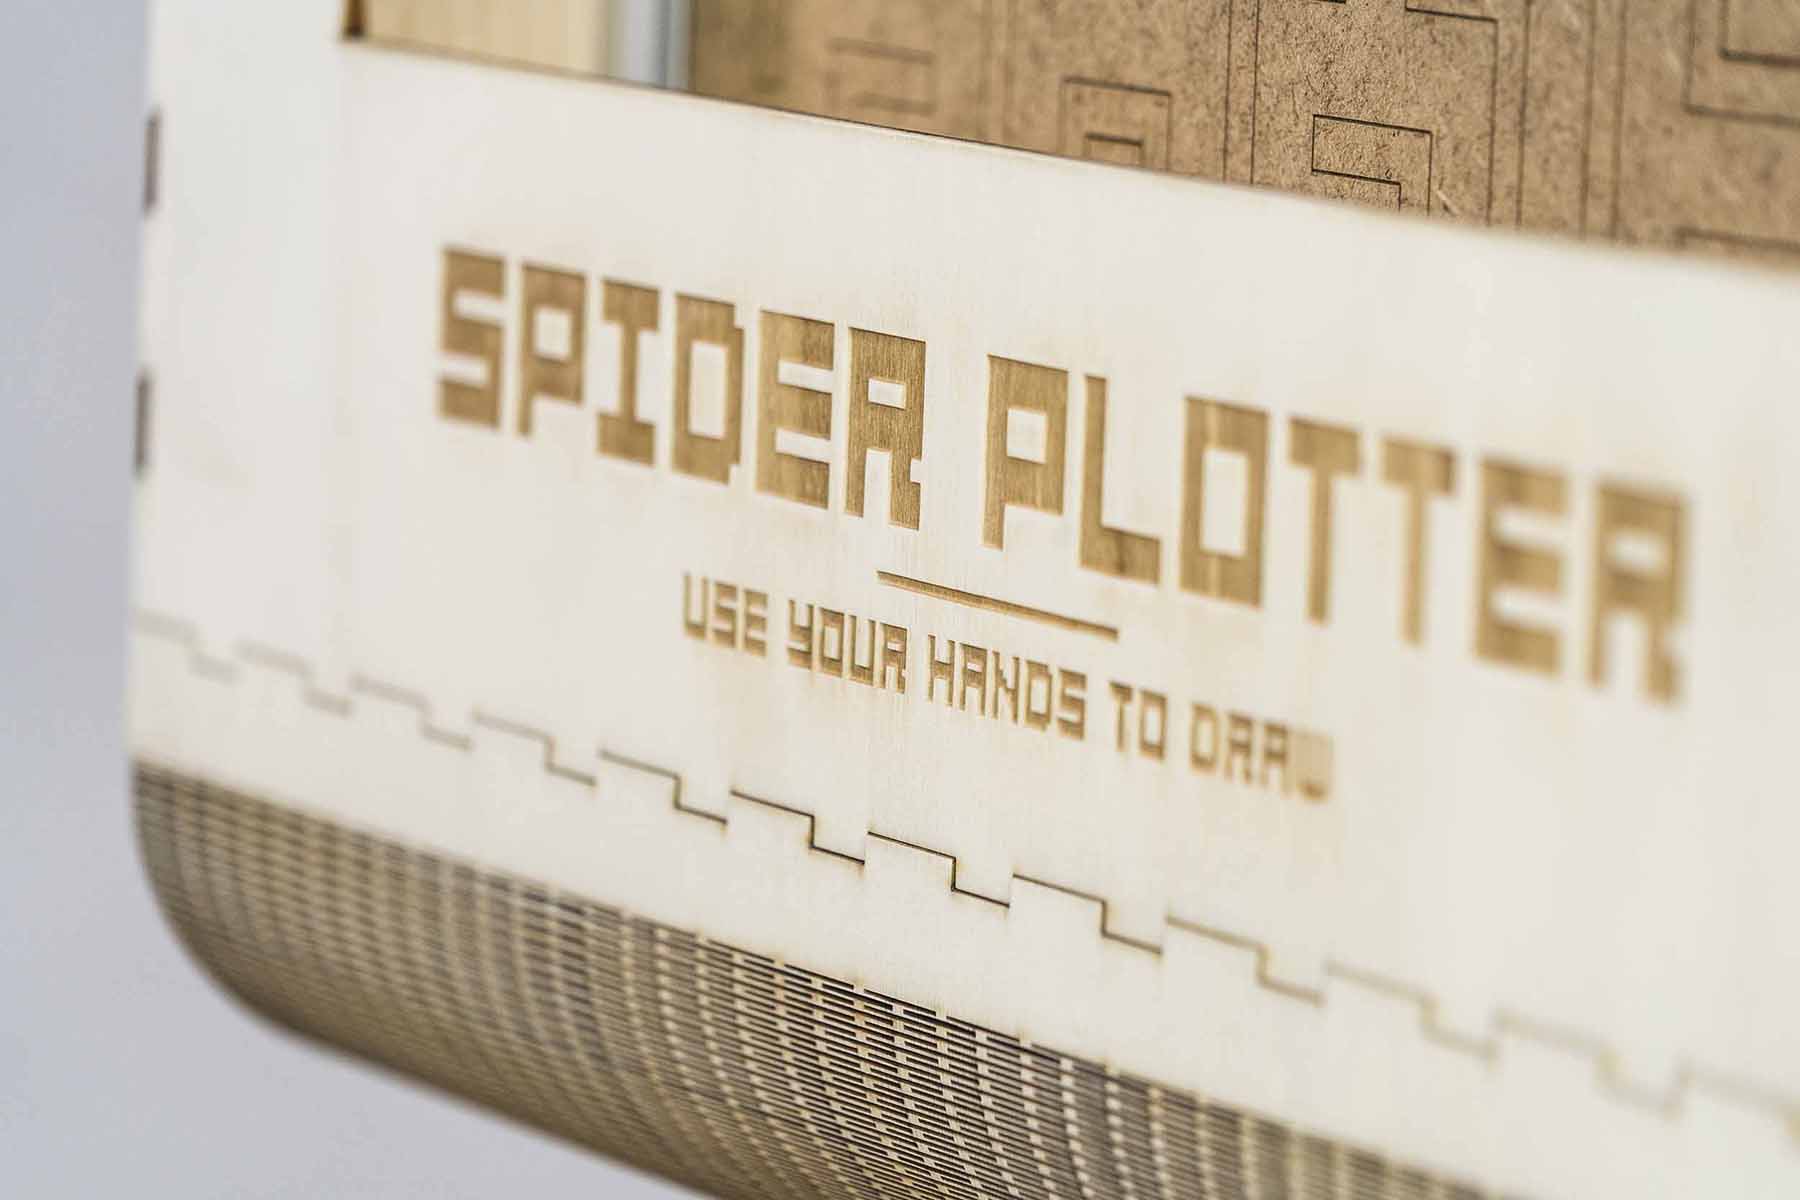 Dettaglio del progetto Spider Plotter